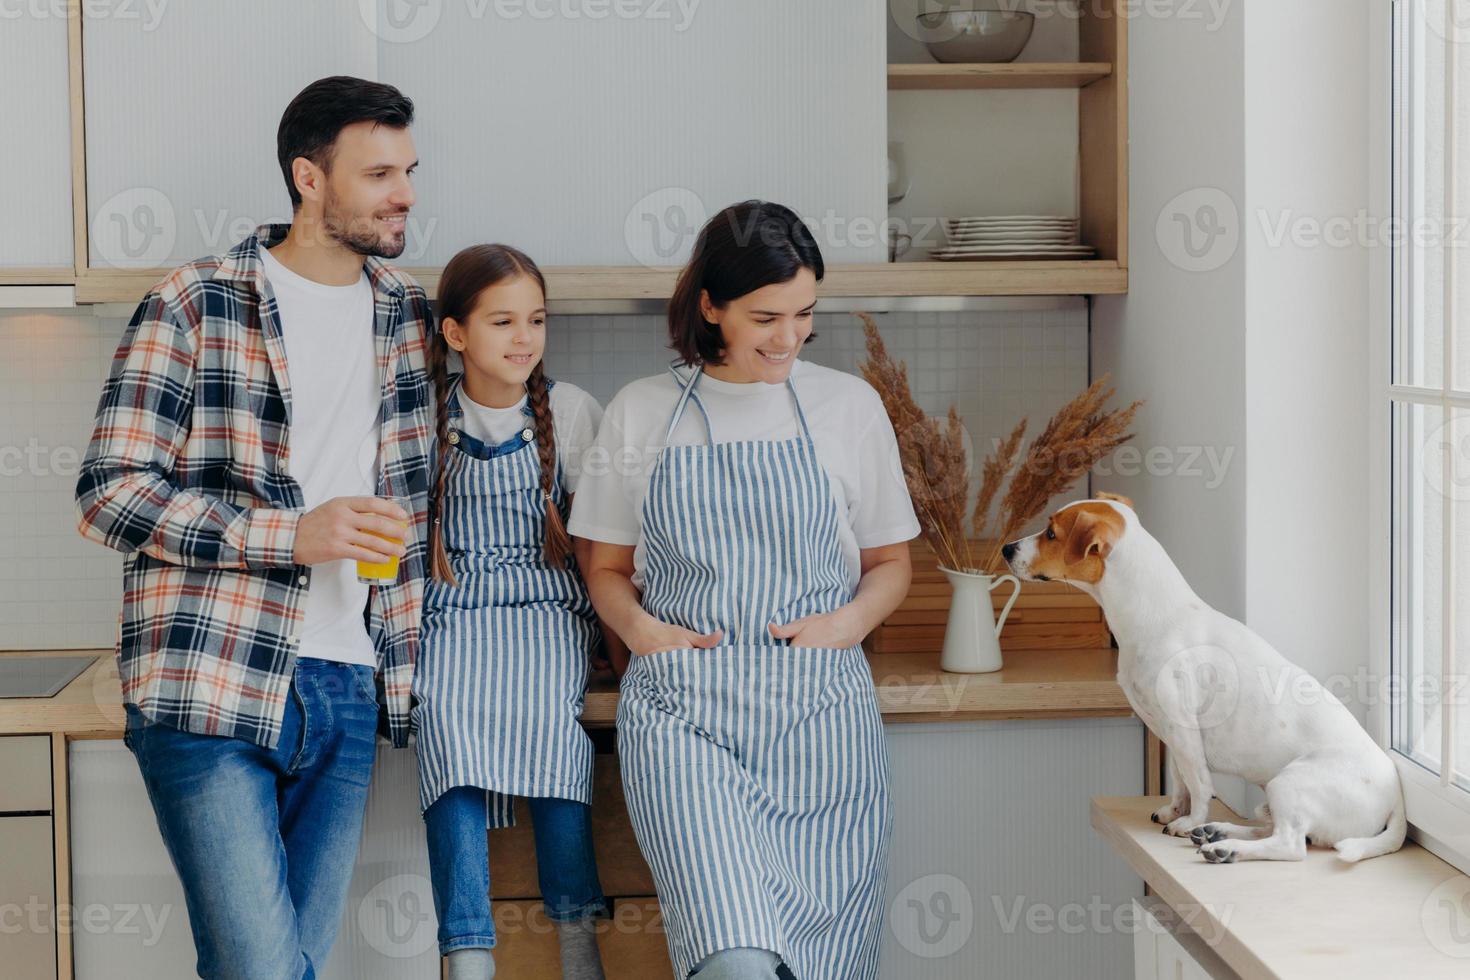 foto van een klein vrouwelijk kind, haar moeder en vader staan samen in de moderne keuken, kijken met grappige uitdrukkingen naar de jack russell terrier-hond, brengen weekend thuis door, gaan iets lekkers koken